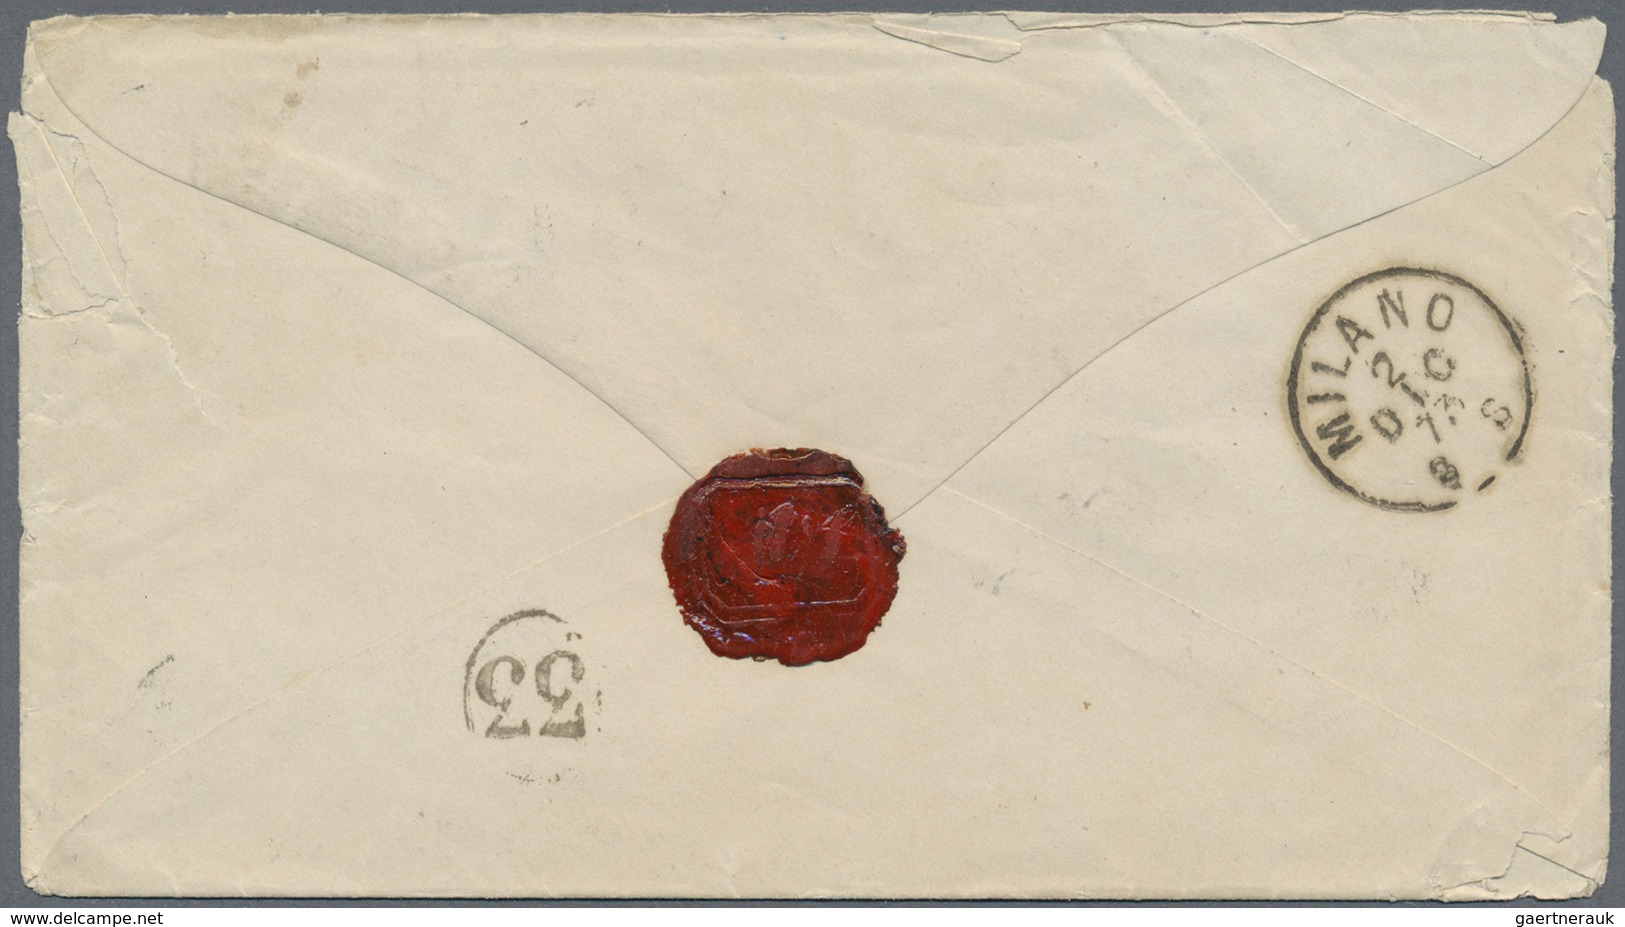 Br Deutsches Reich - Brustschild: 1872, Kleiner Schild 7 Kr. + 2 Kr. Orange Auf Brief Mit K2 "ALTBREISA - Nuovi